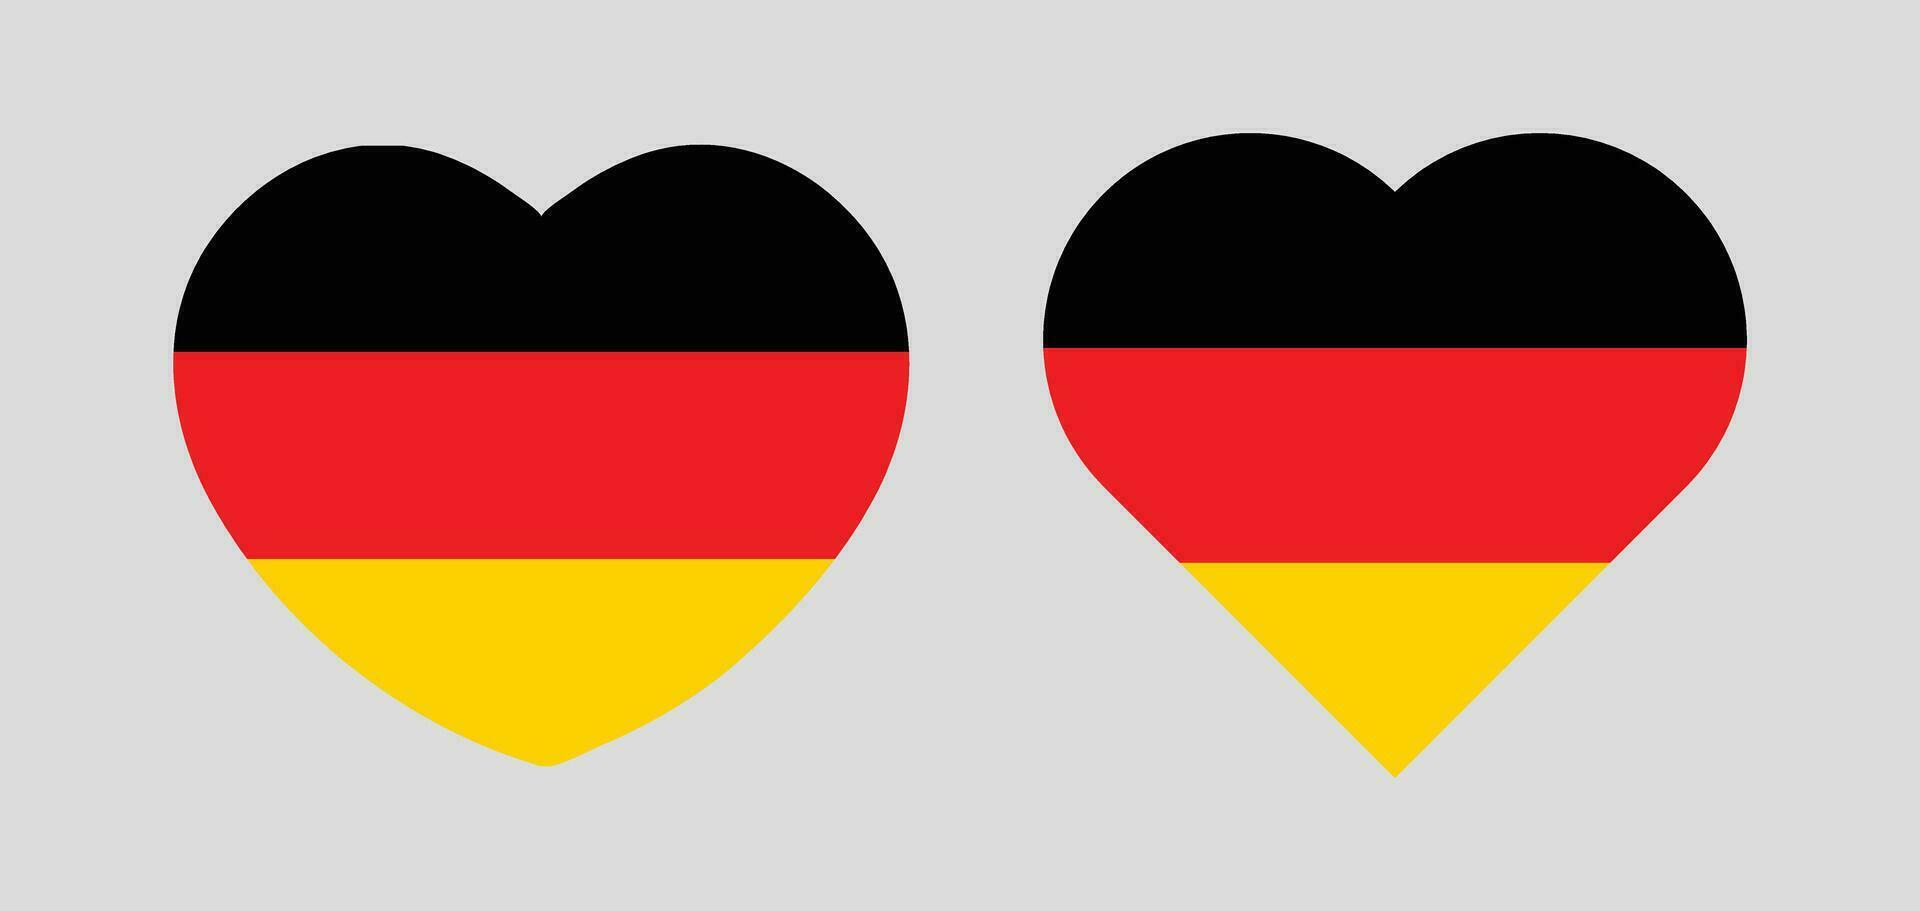 vlak hart vormig illustratie van Duitsland vlag vrij vector. vector